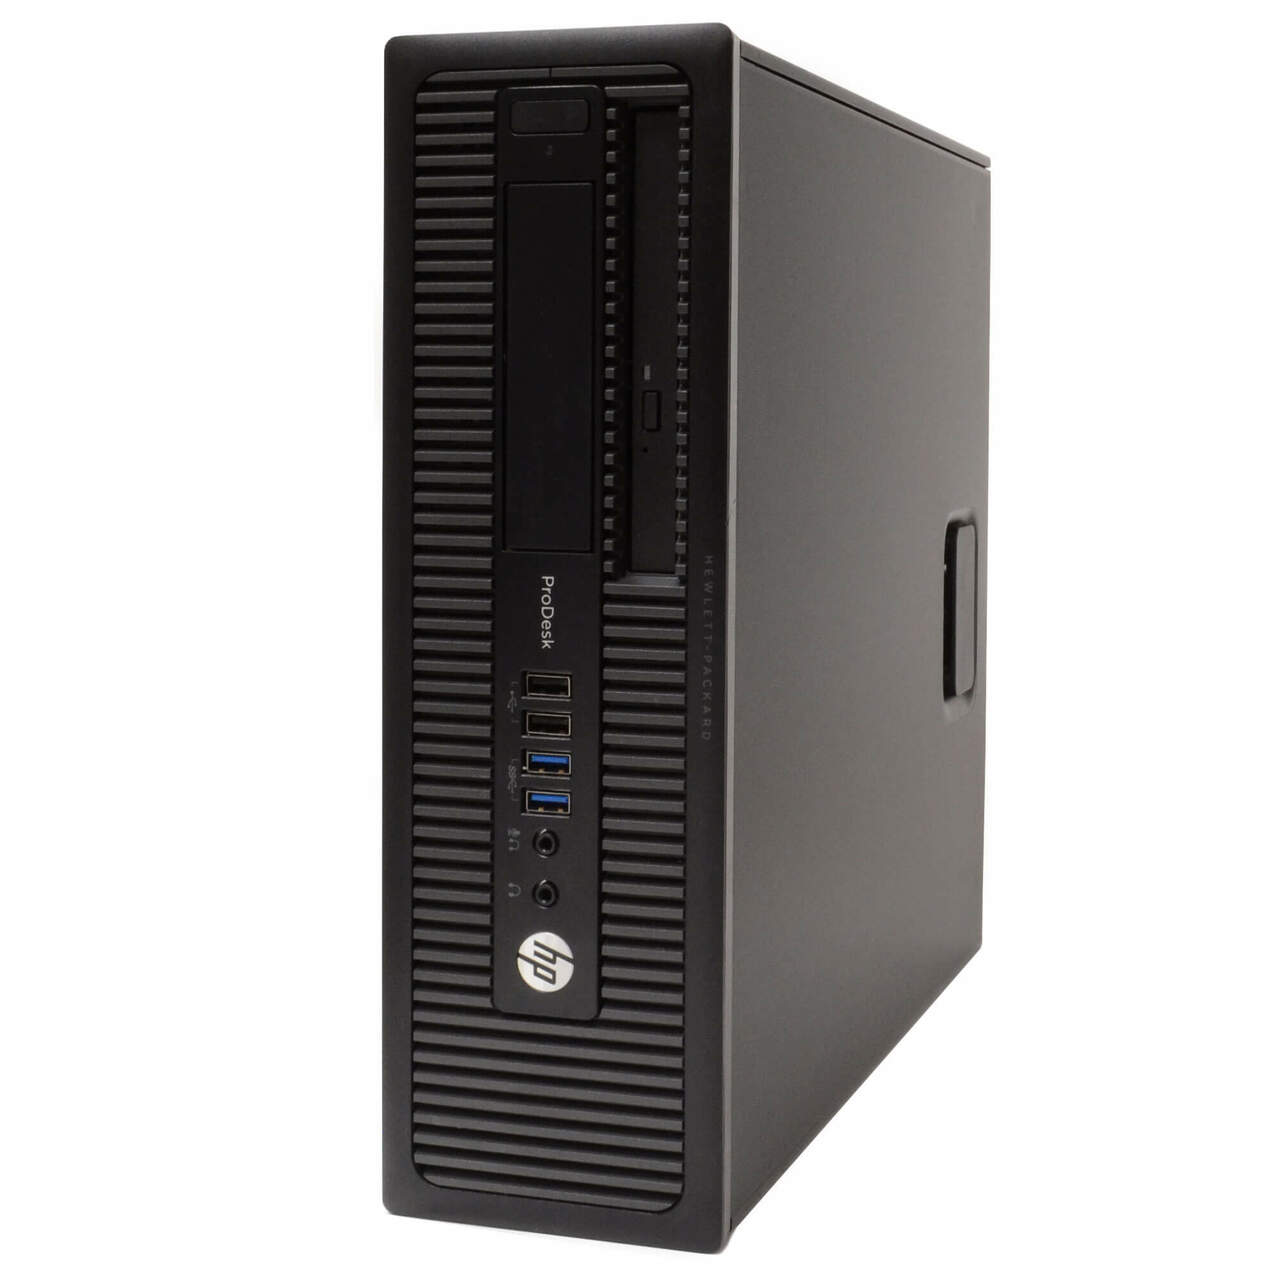 HP ProDesk 600 G1 Desktop Computer: Intel Core i7 (4th Gen), Windows 10, WiFi